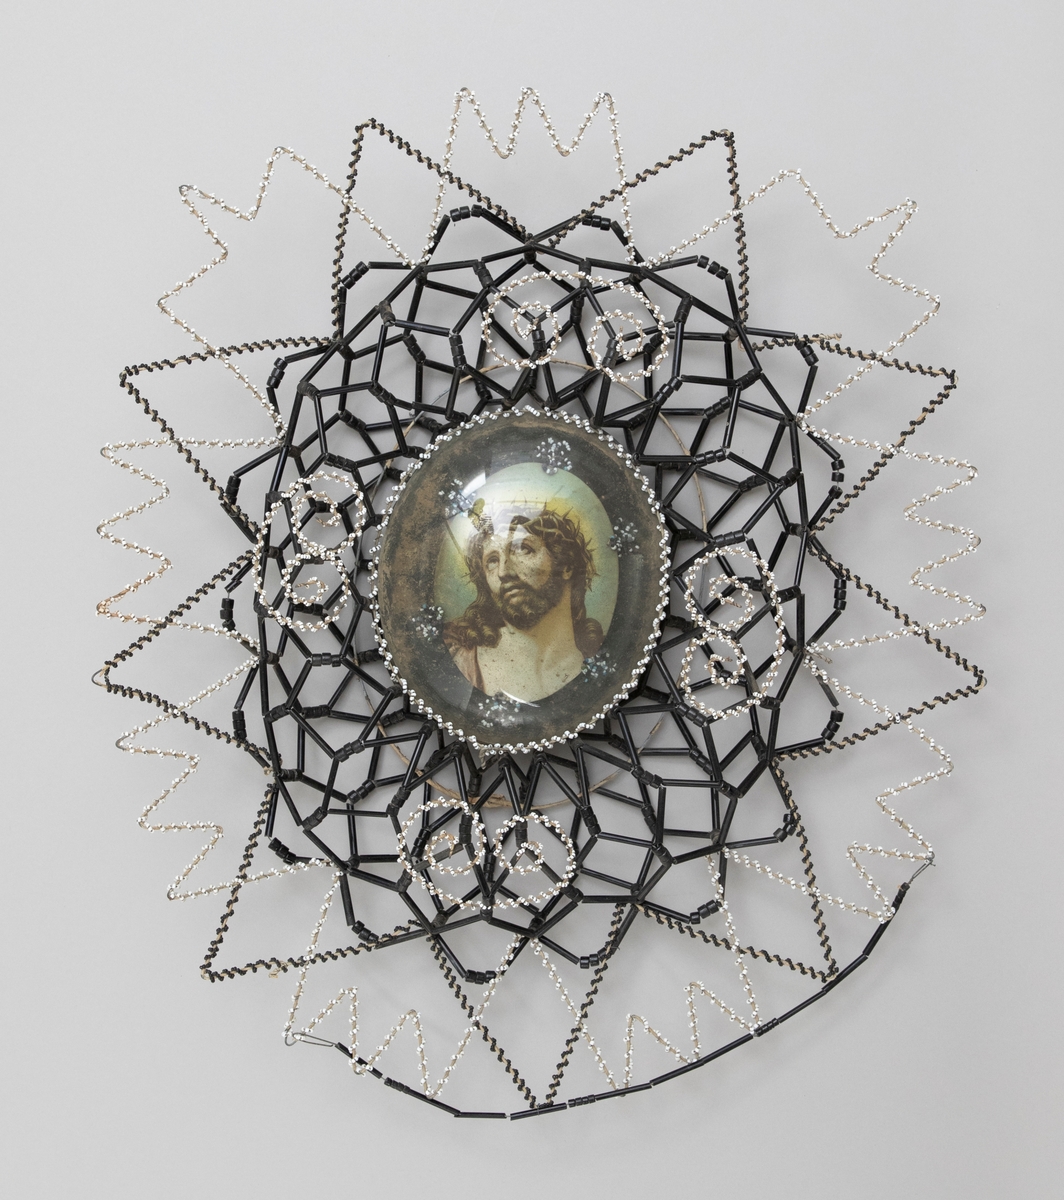 Pärlkrans på stomme av järntråd med dekorativt mönster. I mitten en Kristusbild under ovalt, kupigt glas, däromkring en krans av svarta och vita glaspärlor.